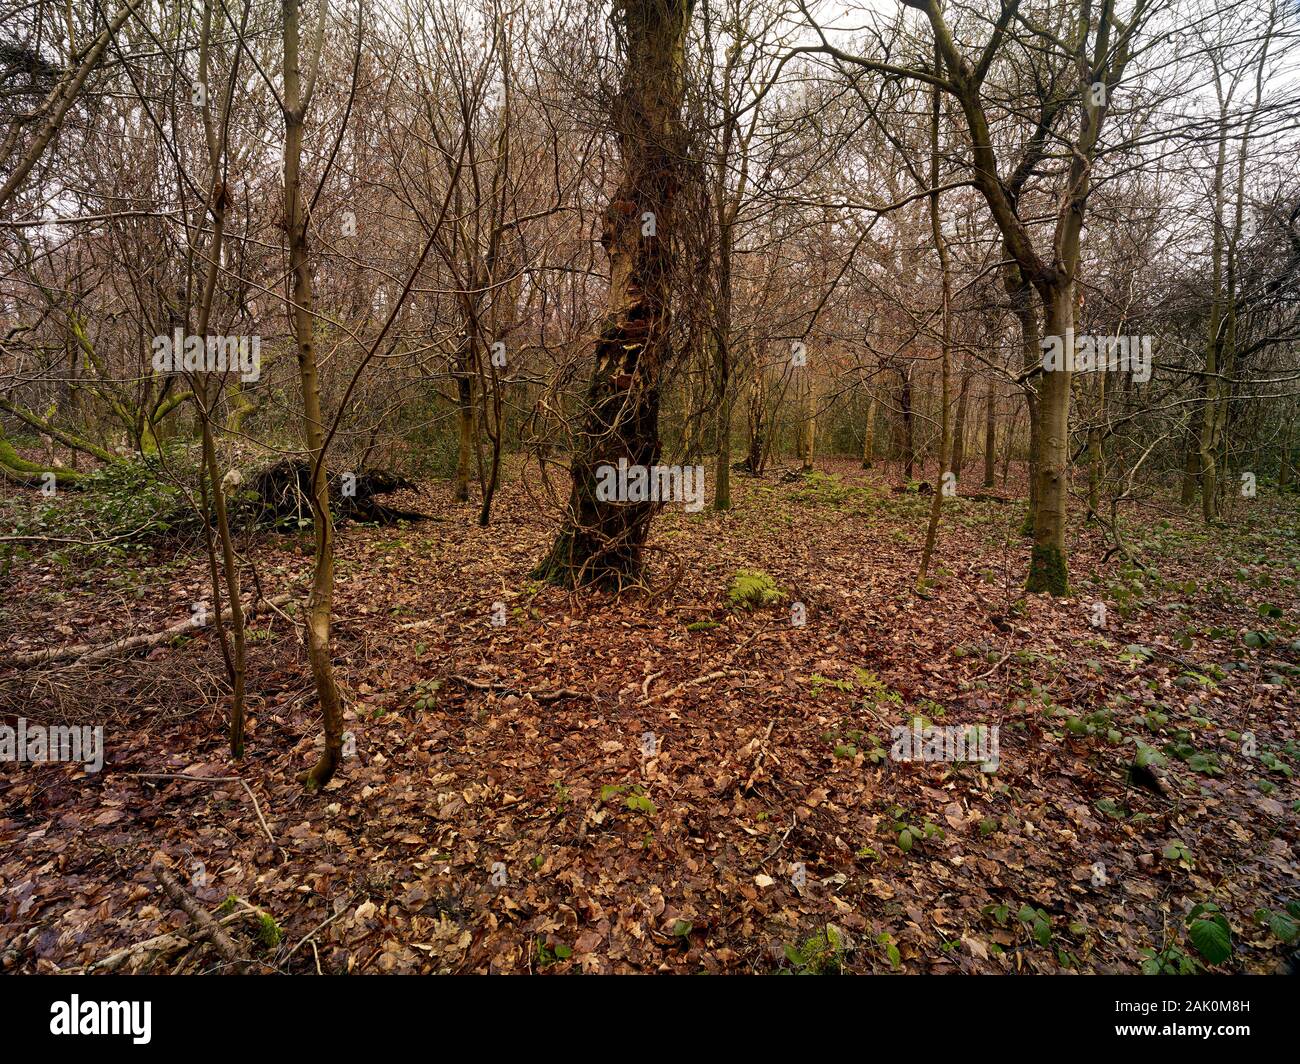 Abstrakte natürliche Landschaft, Solidität und Struktur, mit Vordergrundbaum in Waldlage, London, England, Großbritannien, Europa Stockfoto